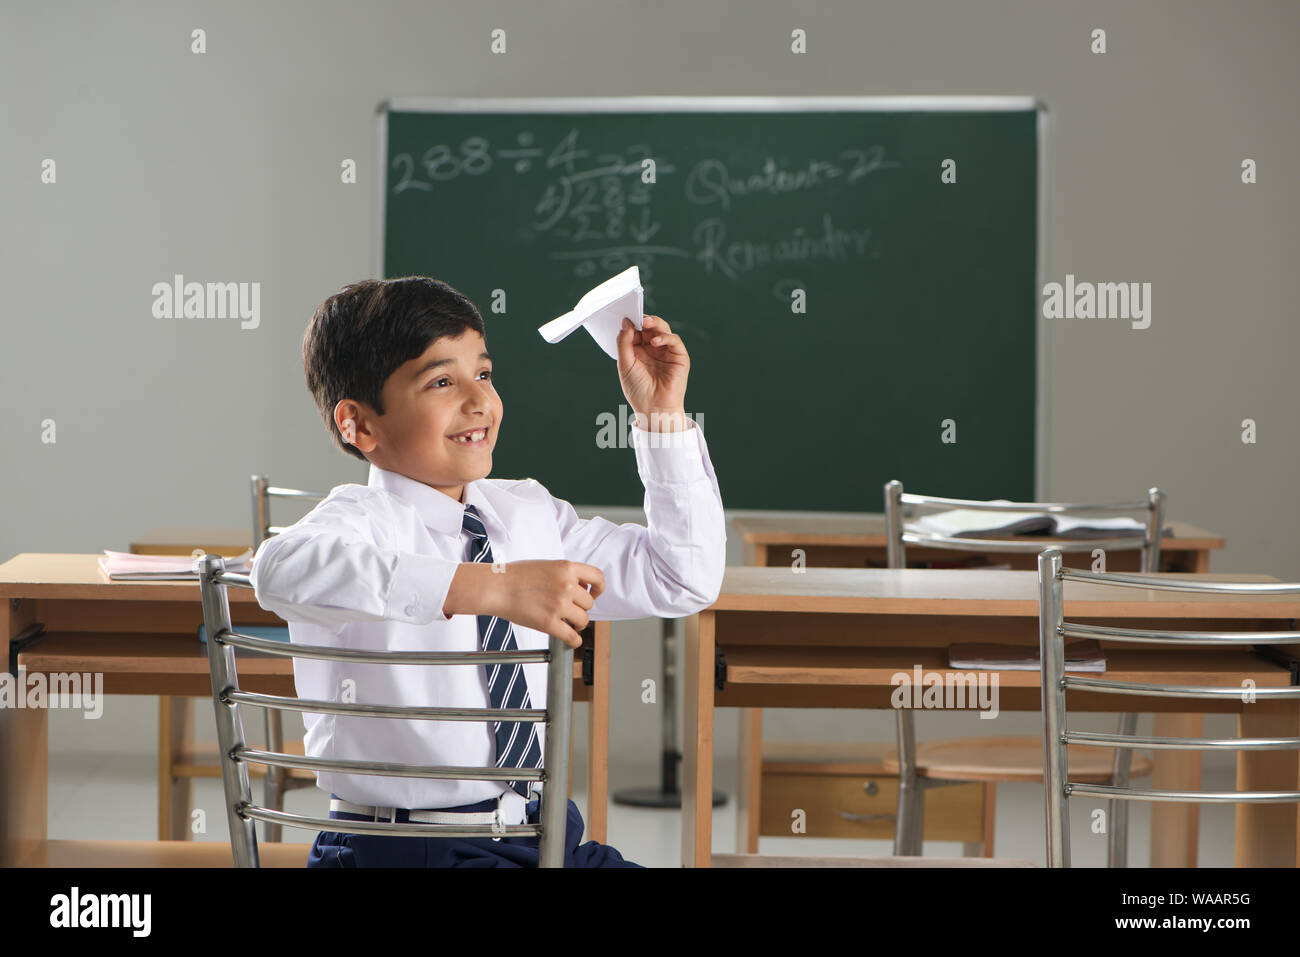 Un écolier jouant avec un avion en papier dans une salle de classe Banque D'Images